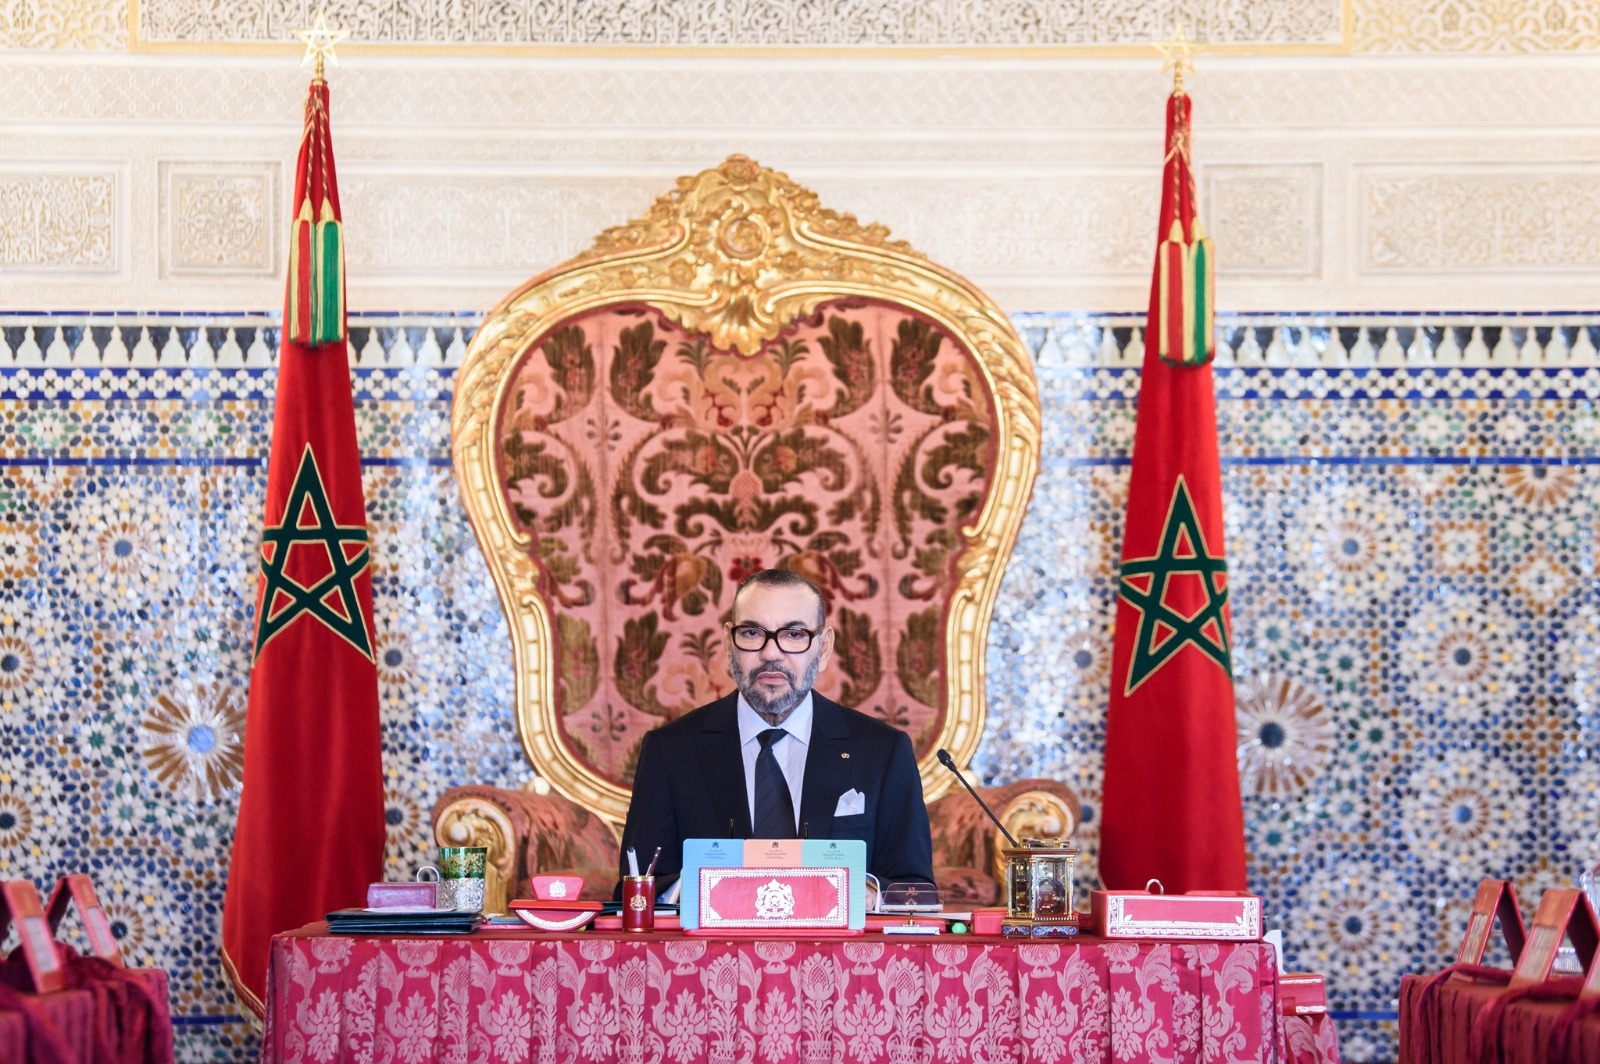 جلالة الملك يهنئ السيد أندري نيرينا راجويلينا بمناسبة إعادة انتخابه رئيسا لجمهورية مدغشقر